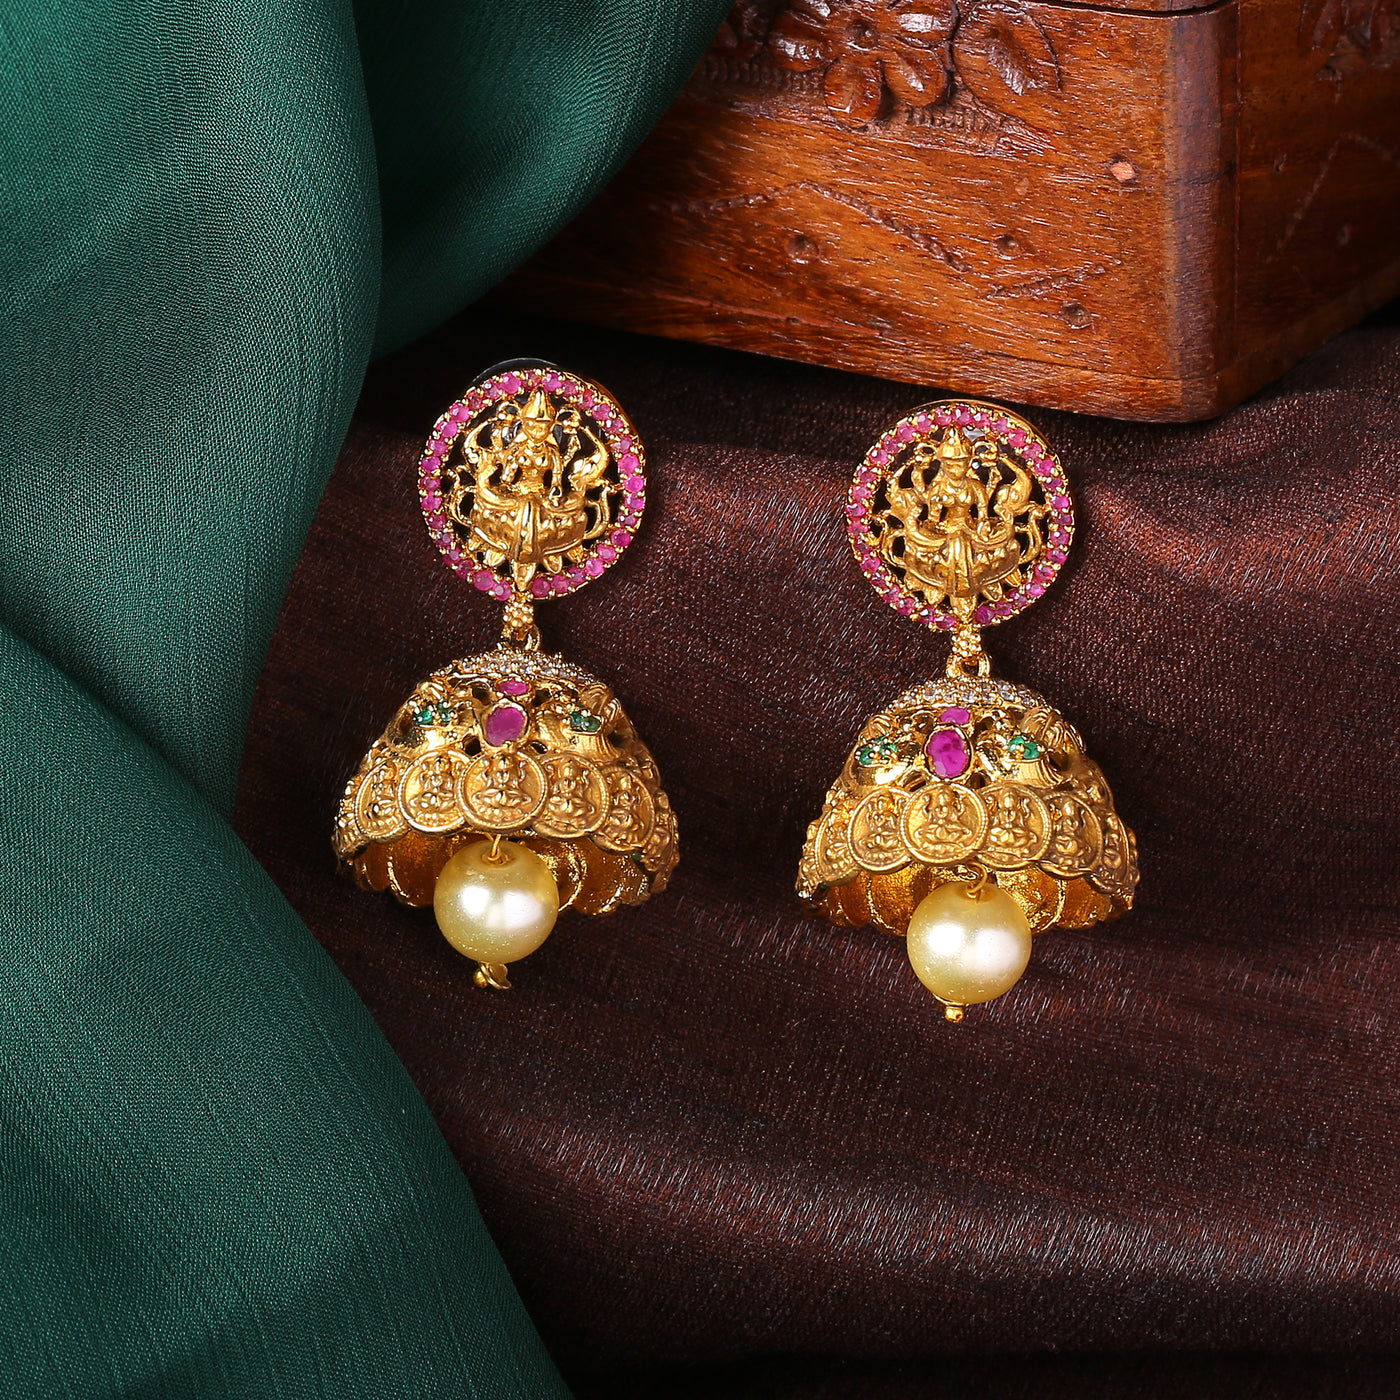 Beautiful one gram gold ear studs in lakshmi devi design